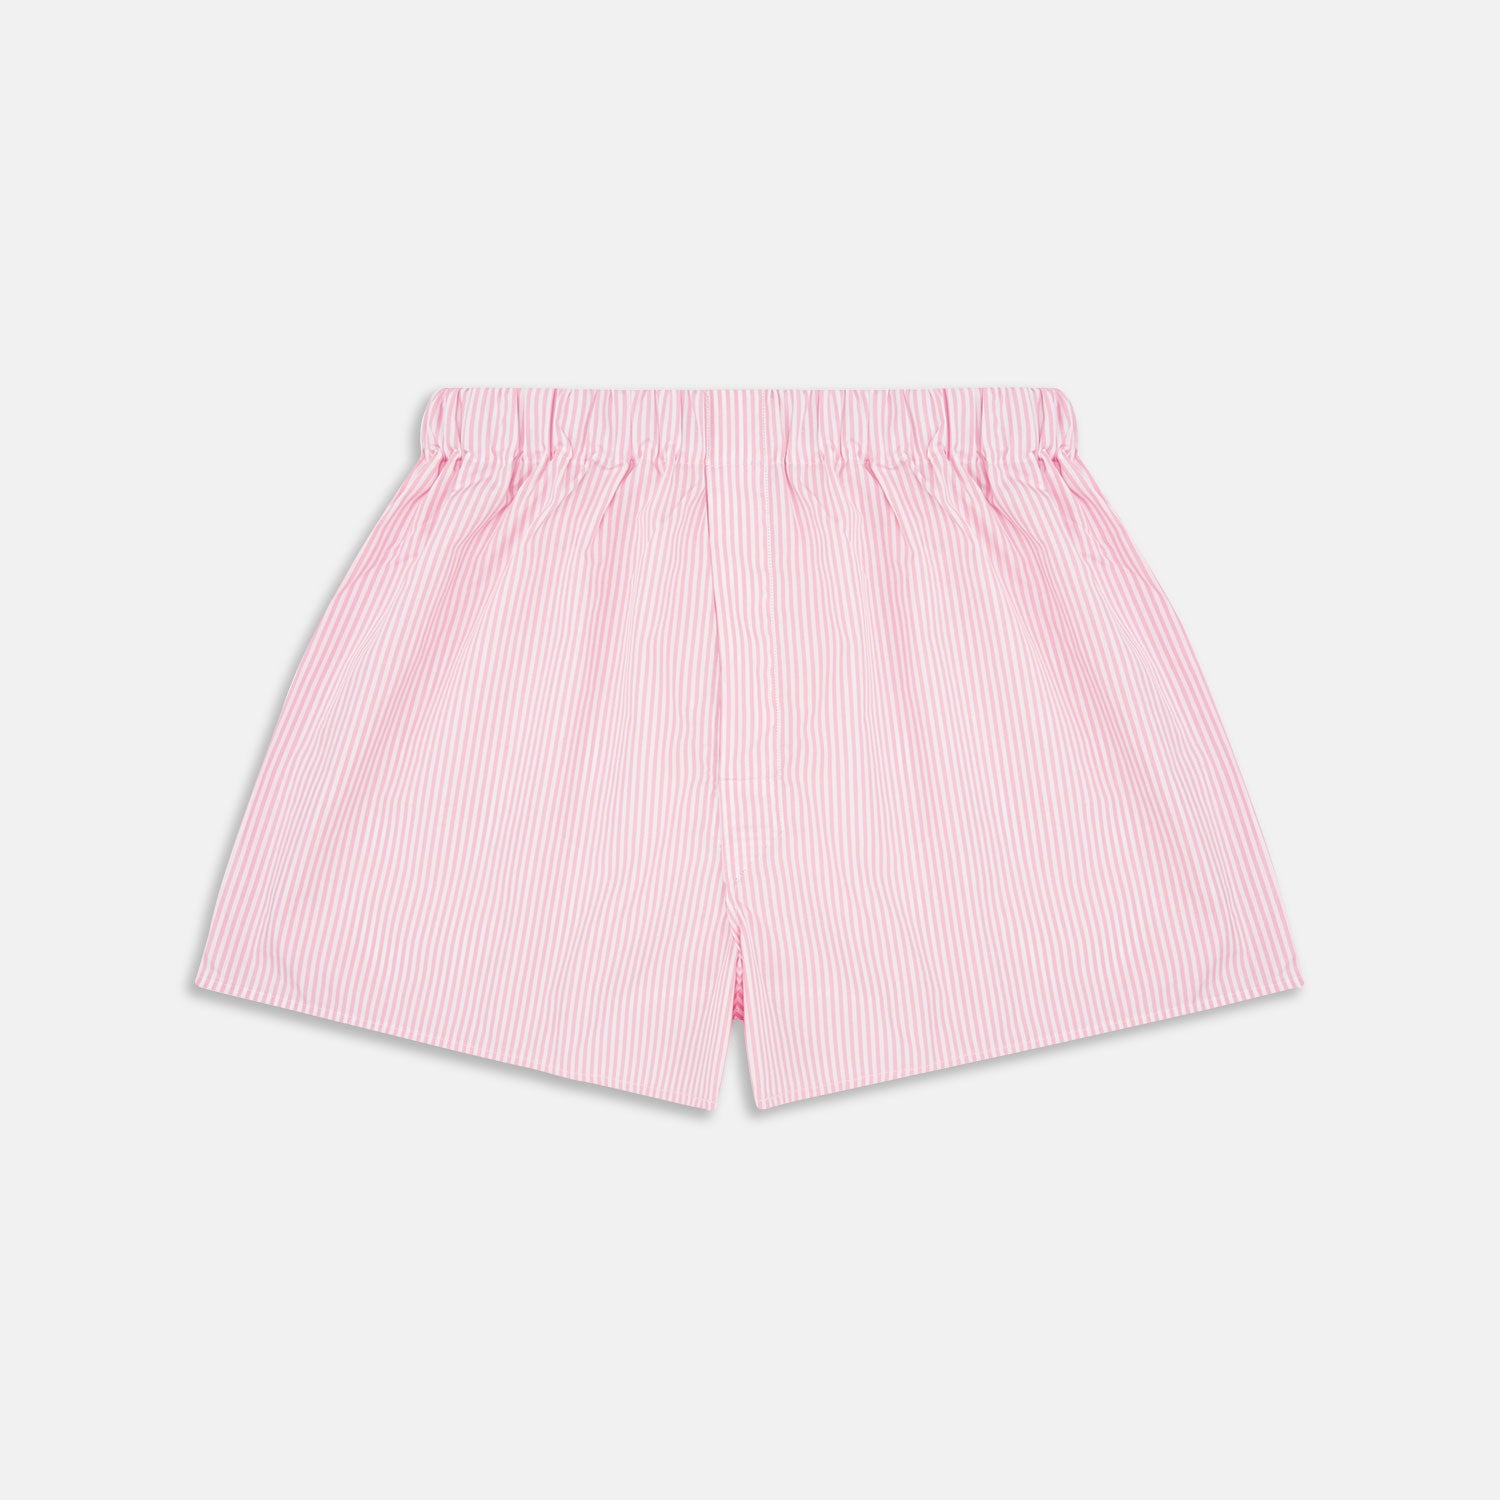 Sincar Boxer Shorts Pink / White Stripe